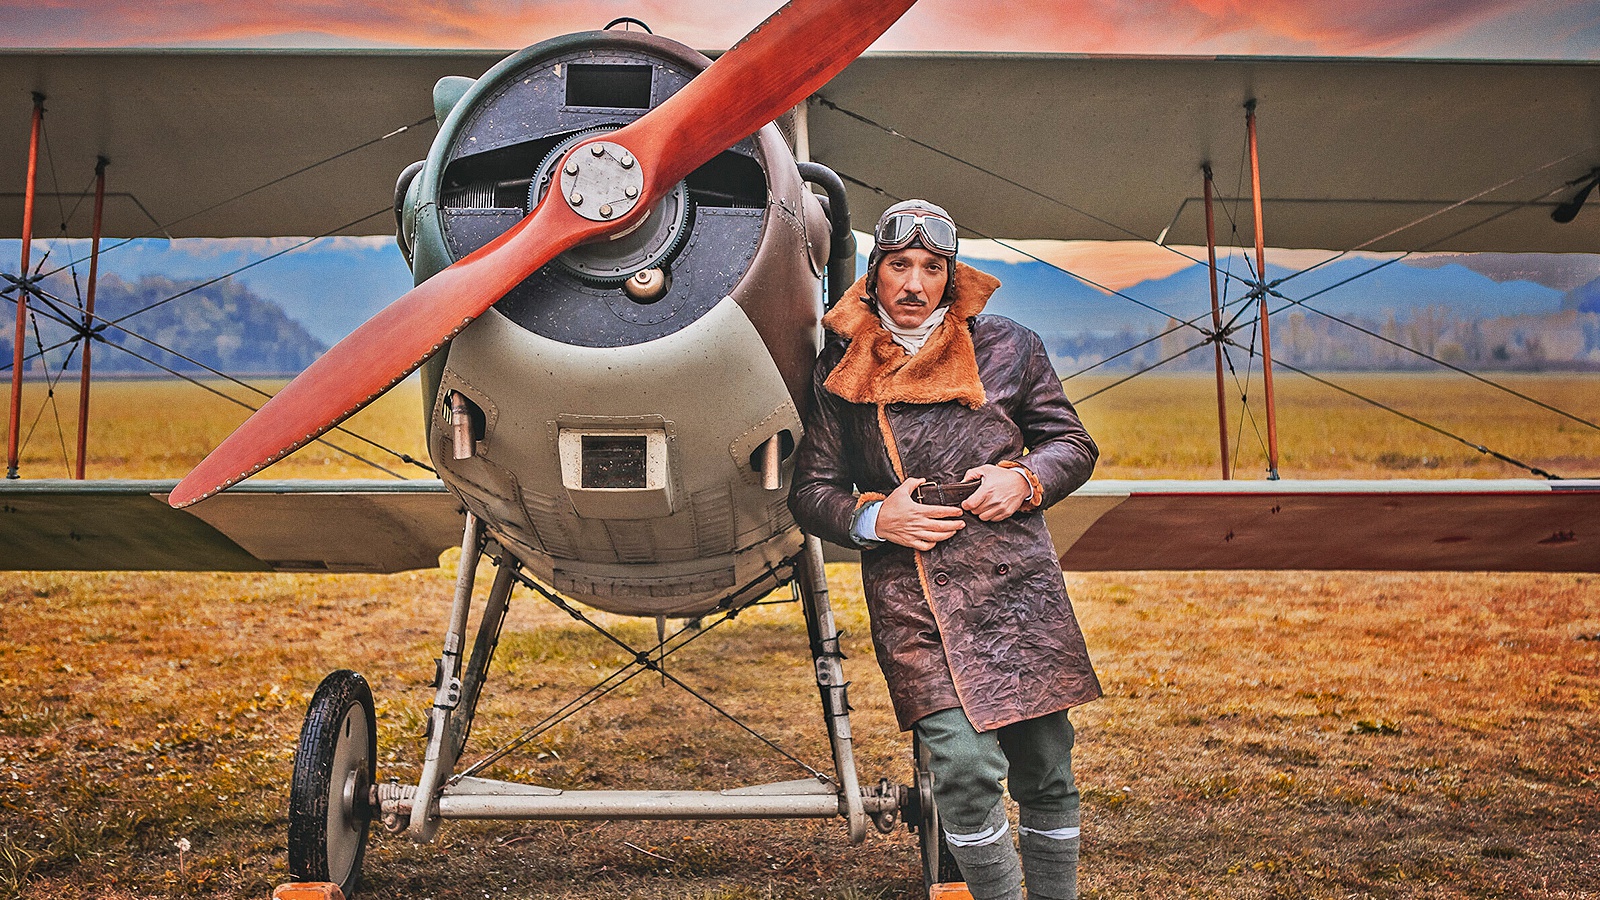 I cacciatori del cielo: per i cento anni dell'Aeronautica, la Rai racconta la storia dei primi aviatori